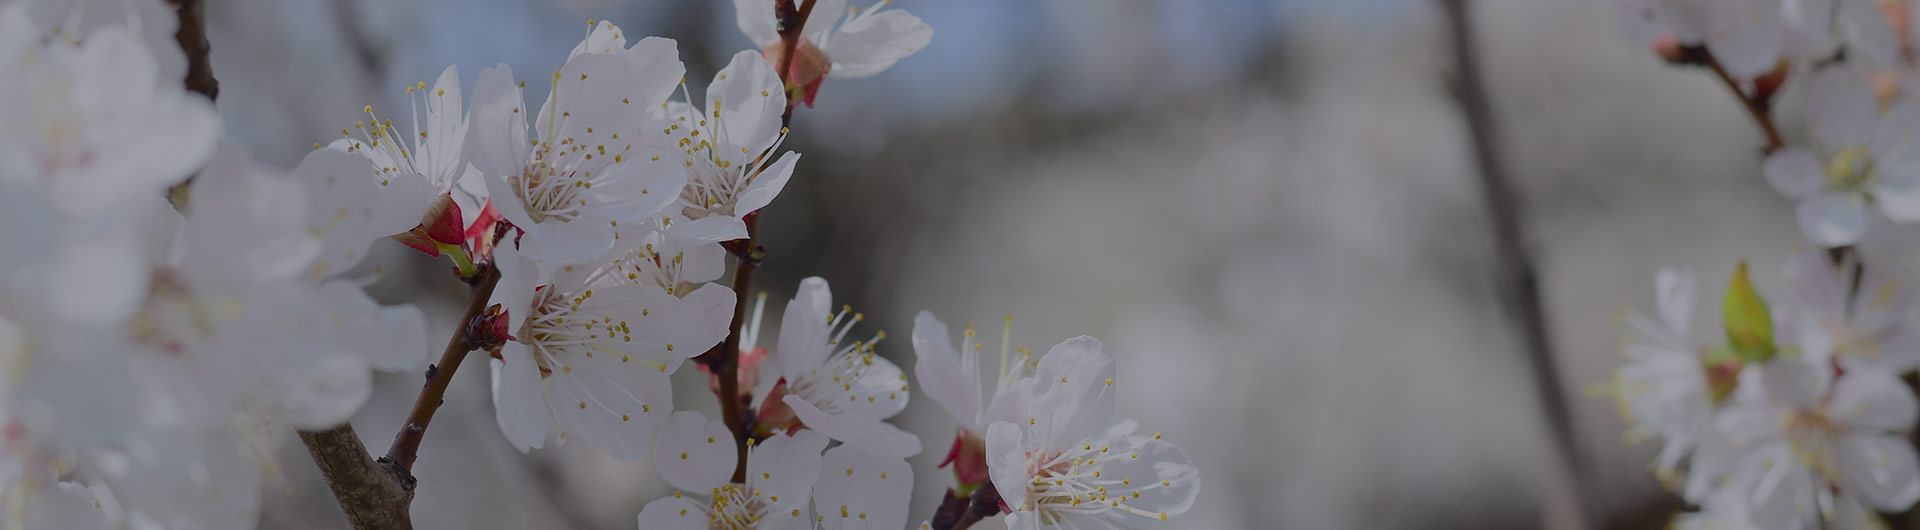 Apple blossoms, Arkansas' state flower.